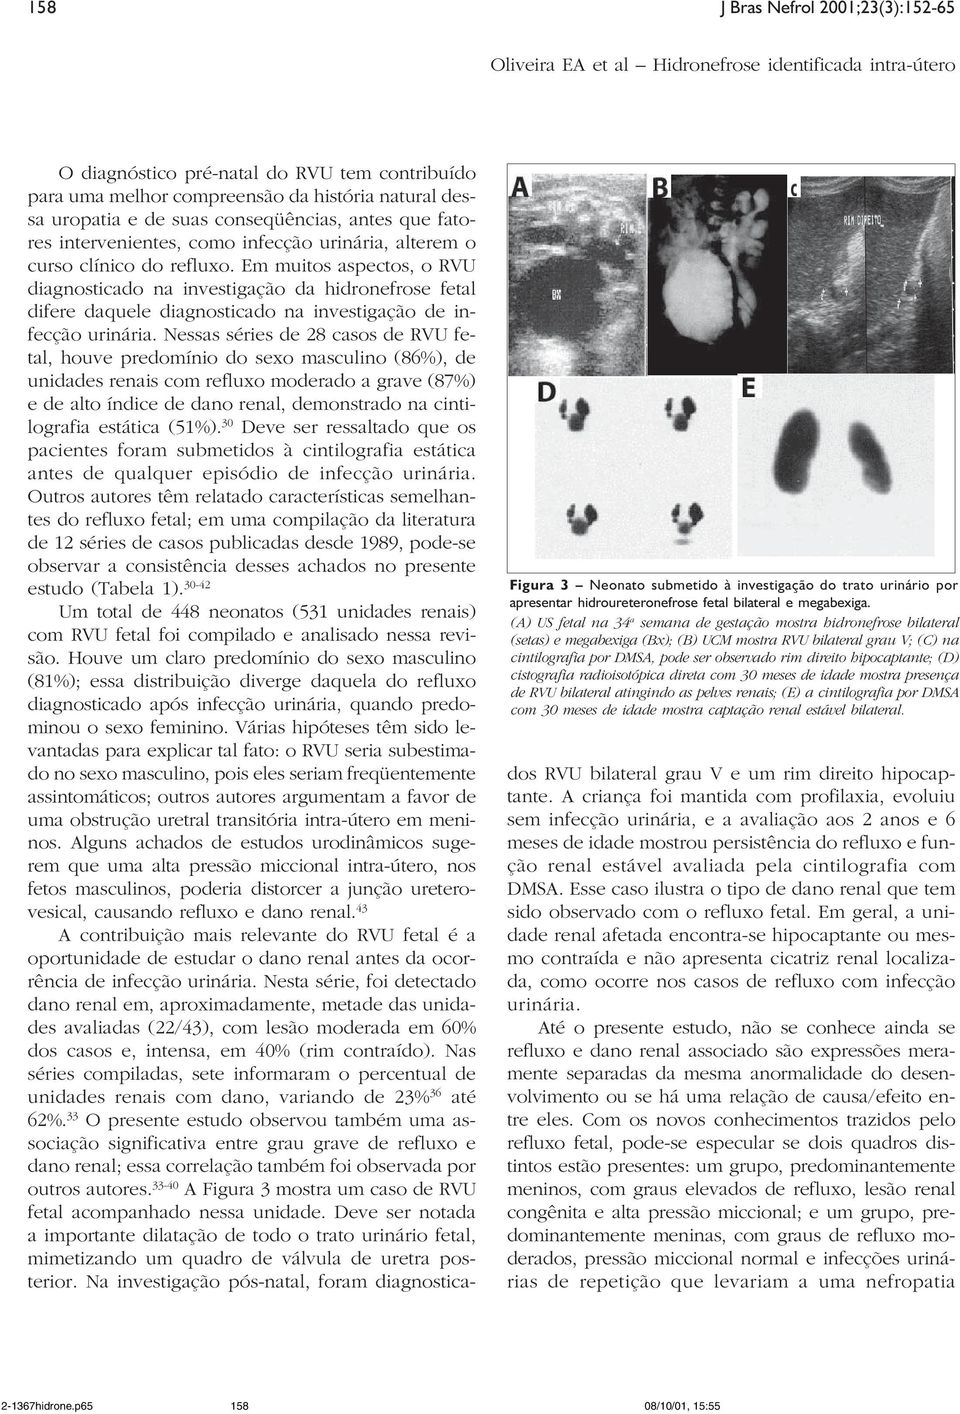 hipocaptante; (D) cistografia radioisotópica direta com 30 meses de idade mostra presença de RVU bilateral atingindo as pelves renais; (E) a cintilografia por DMSA com 30 meses de idade mostra